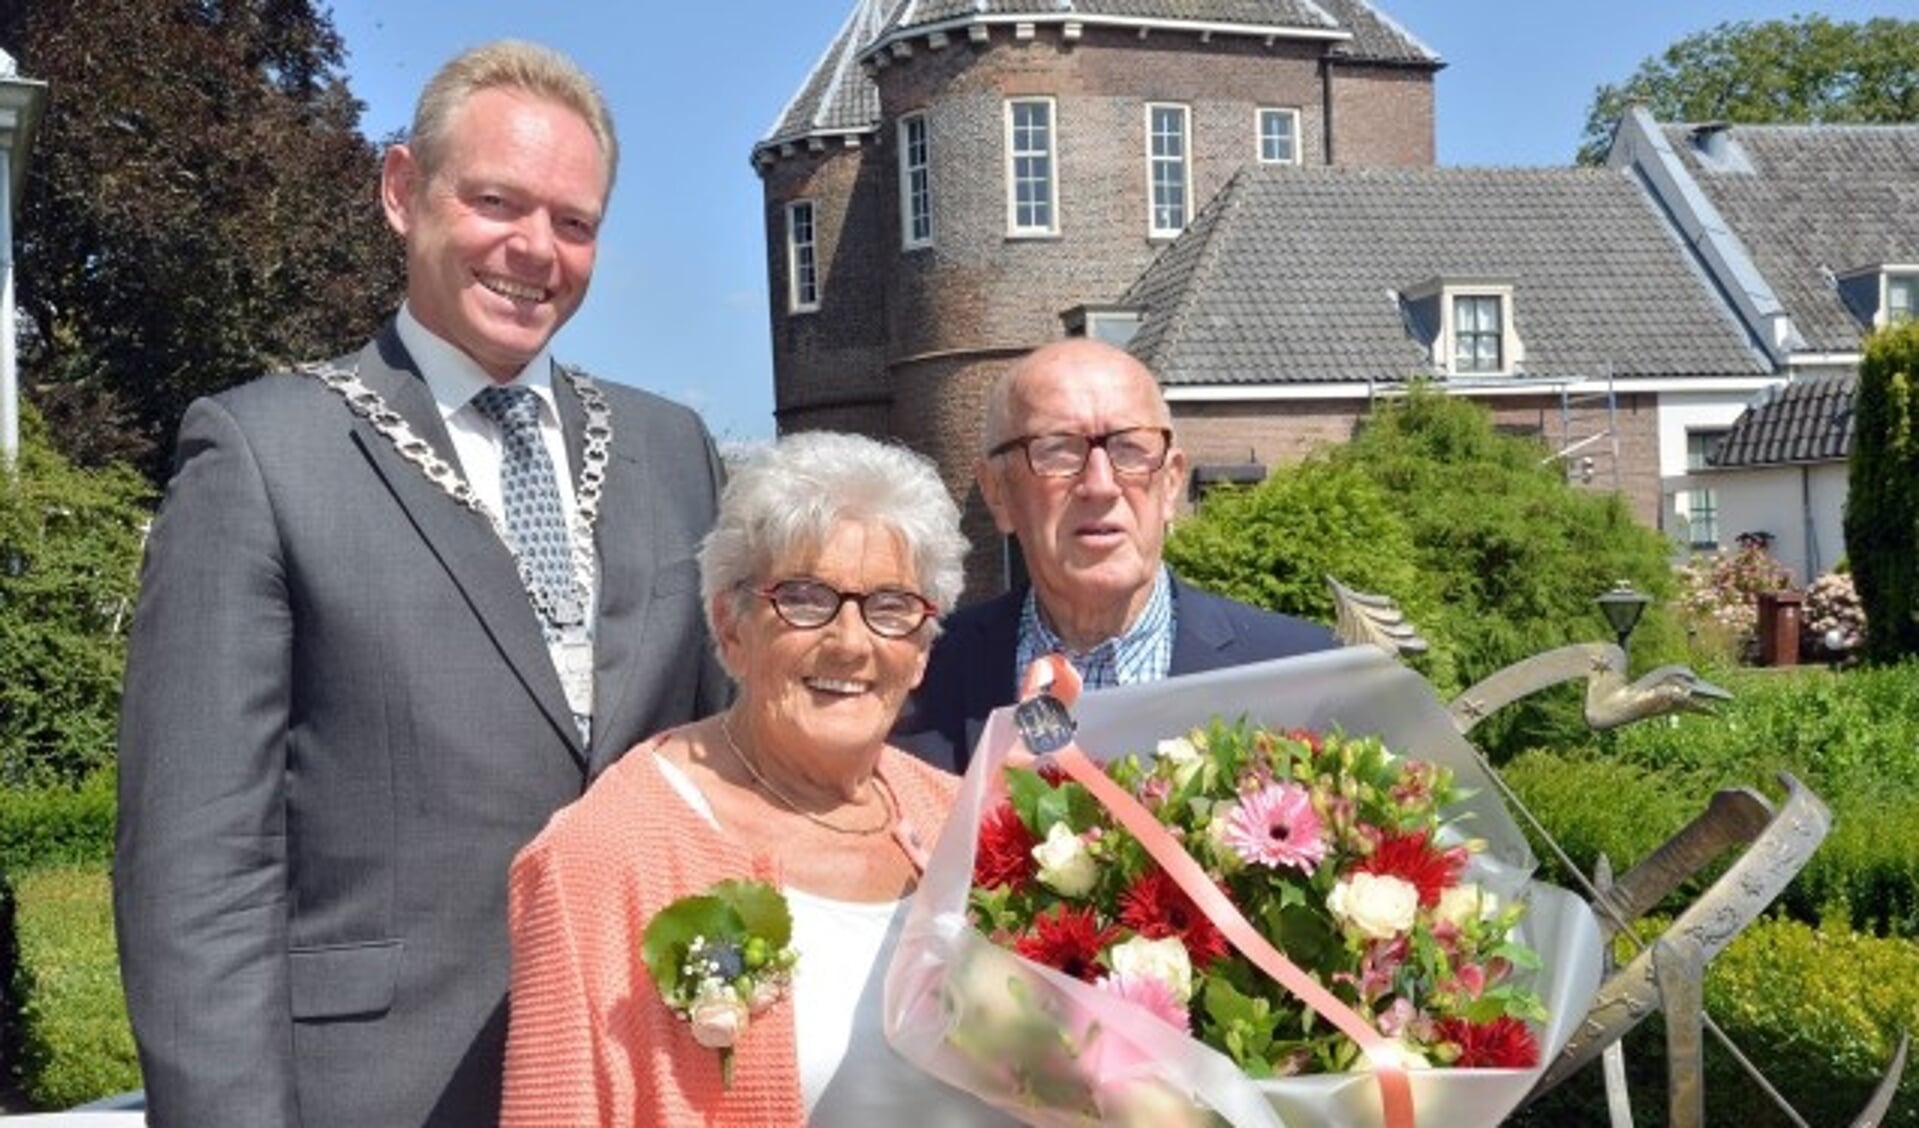 Loco-burgemeester Ivo ten Hage feliciteerde het bruidspaar Riet Verheul-Blokker en Wim Verheul met hun diamanten huwelijk. (Foto: Paul van den Dungen)